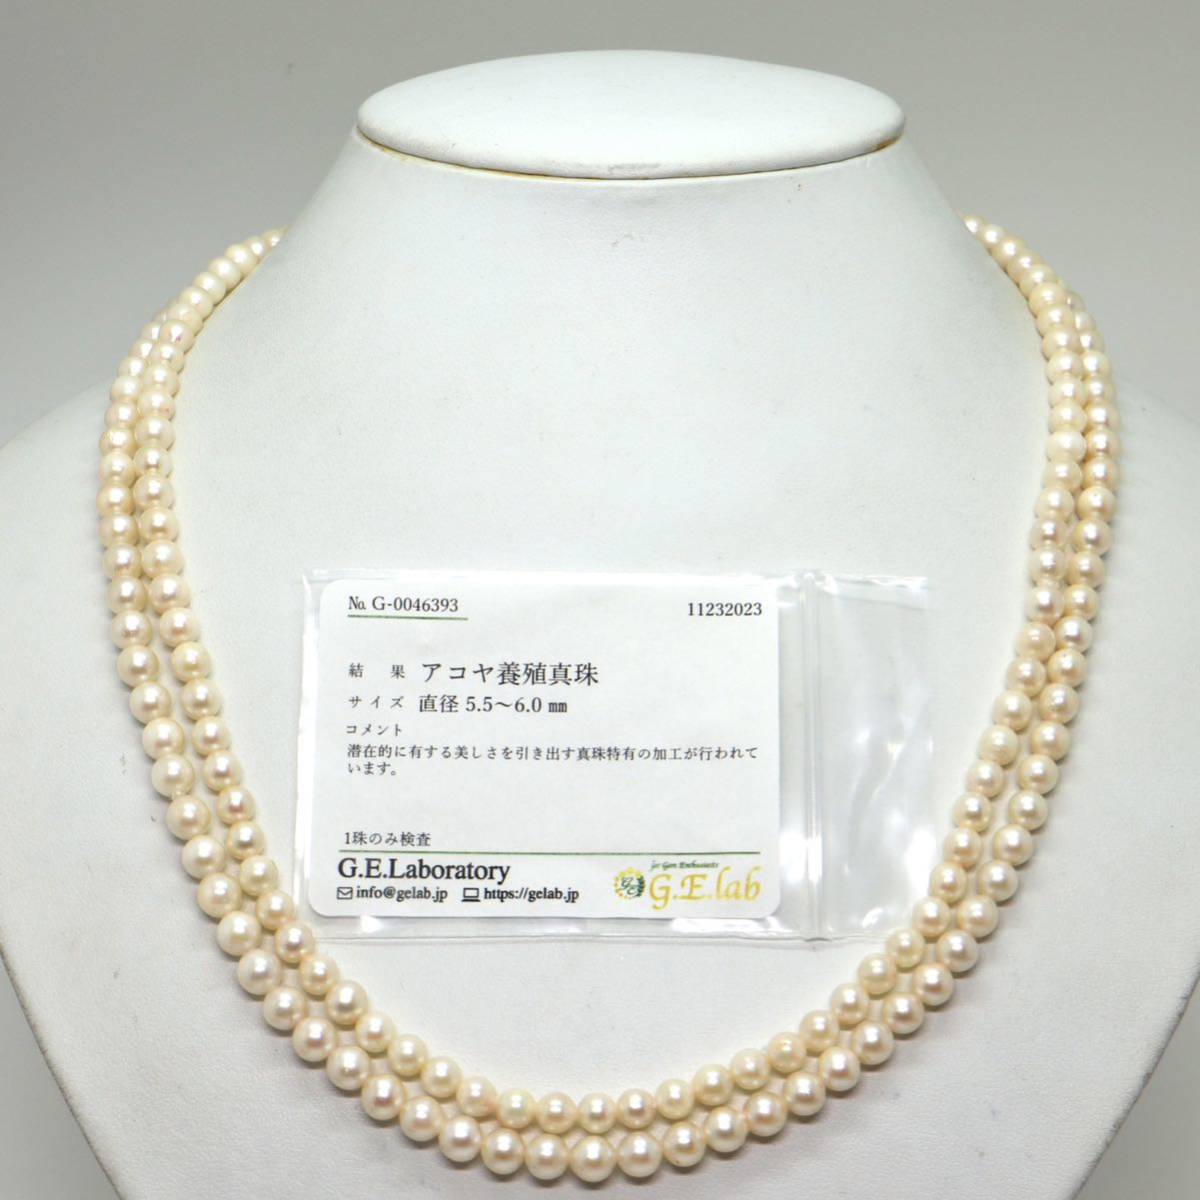 ソーティング付き!!《アコヤ本真珠ロングネックレス》D 5.5-6.0mm珠 49.8g 106.5cm pearl necklace ジュエリー jewelry DE0/EA0_画像2